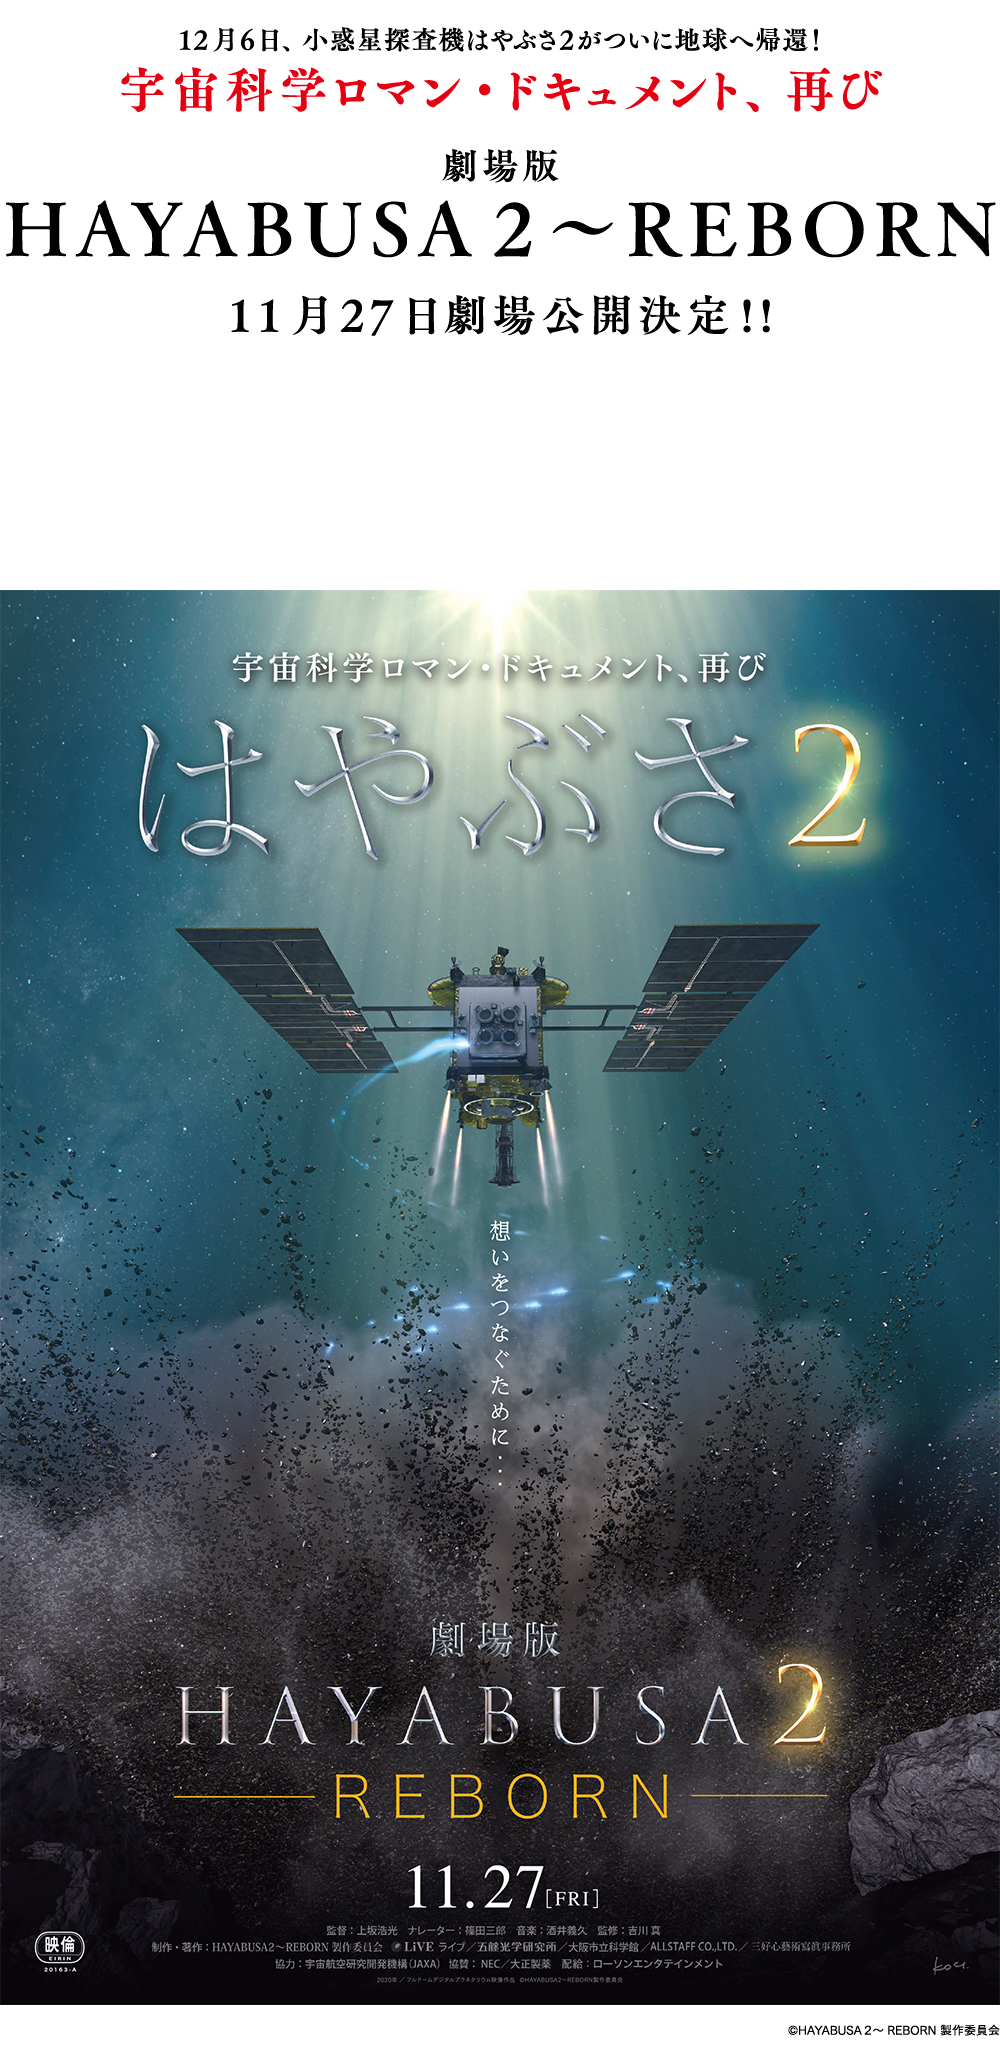 12月6日、小惑星探査機はやぶさ2がついに地球へ帰還!宇宙科学ロマン・ドキュメント、再び。劇場版 HAYABUSA2~REBORN11月27日劇場公開決定!!